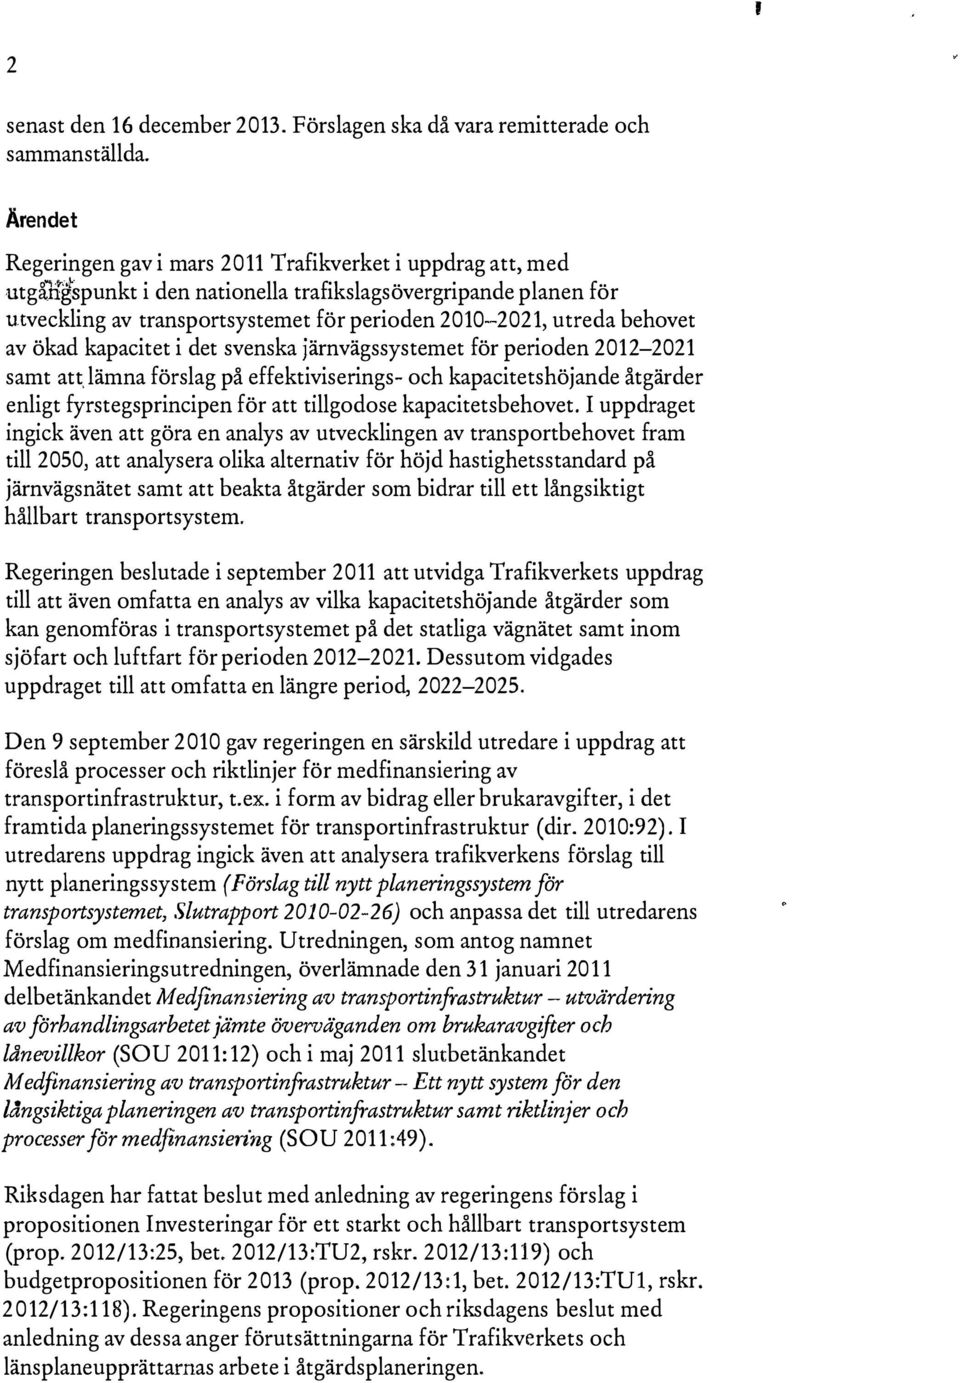 behovet av ökad kapacitet i det svenska järnvägssystemet för perioden 2012-2021 samt att, lämna förslag på effektiviserings- och kapacitetshöjande åtgärder enligt fyrstegsprincipen för att tillgodose